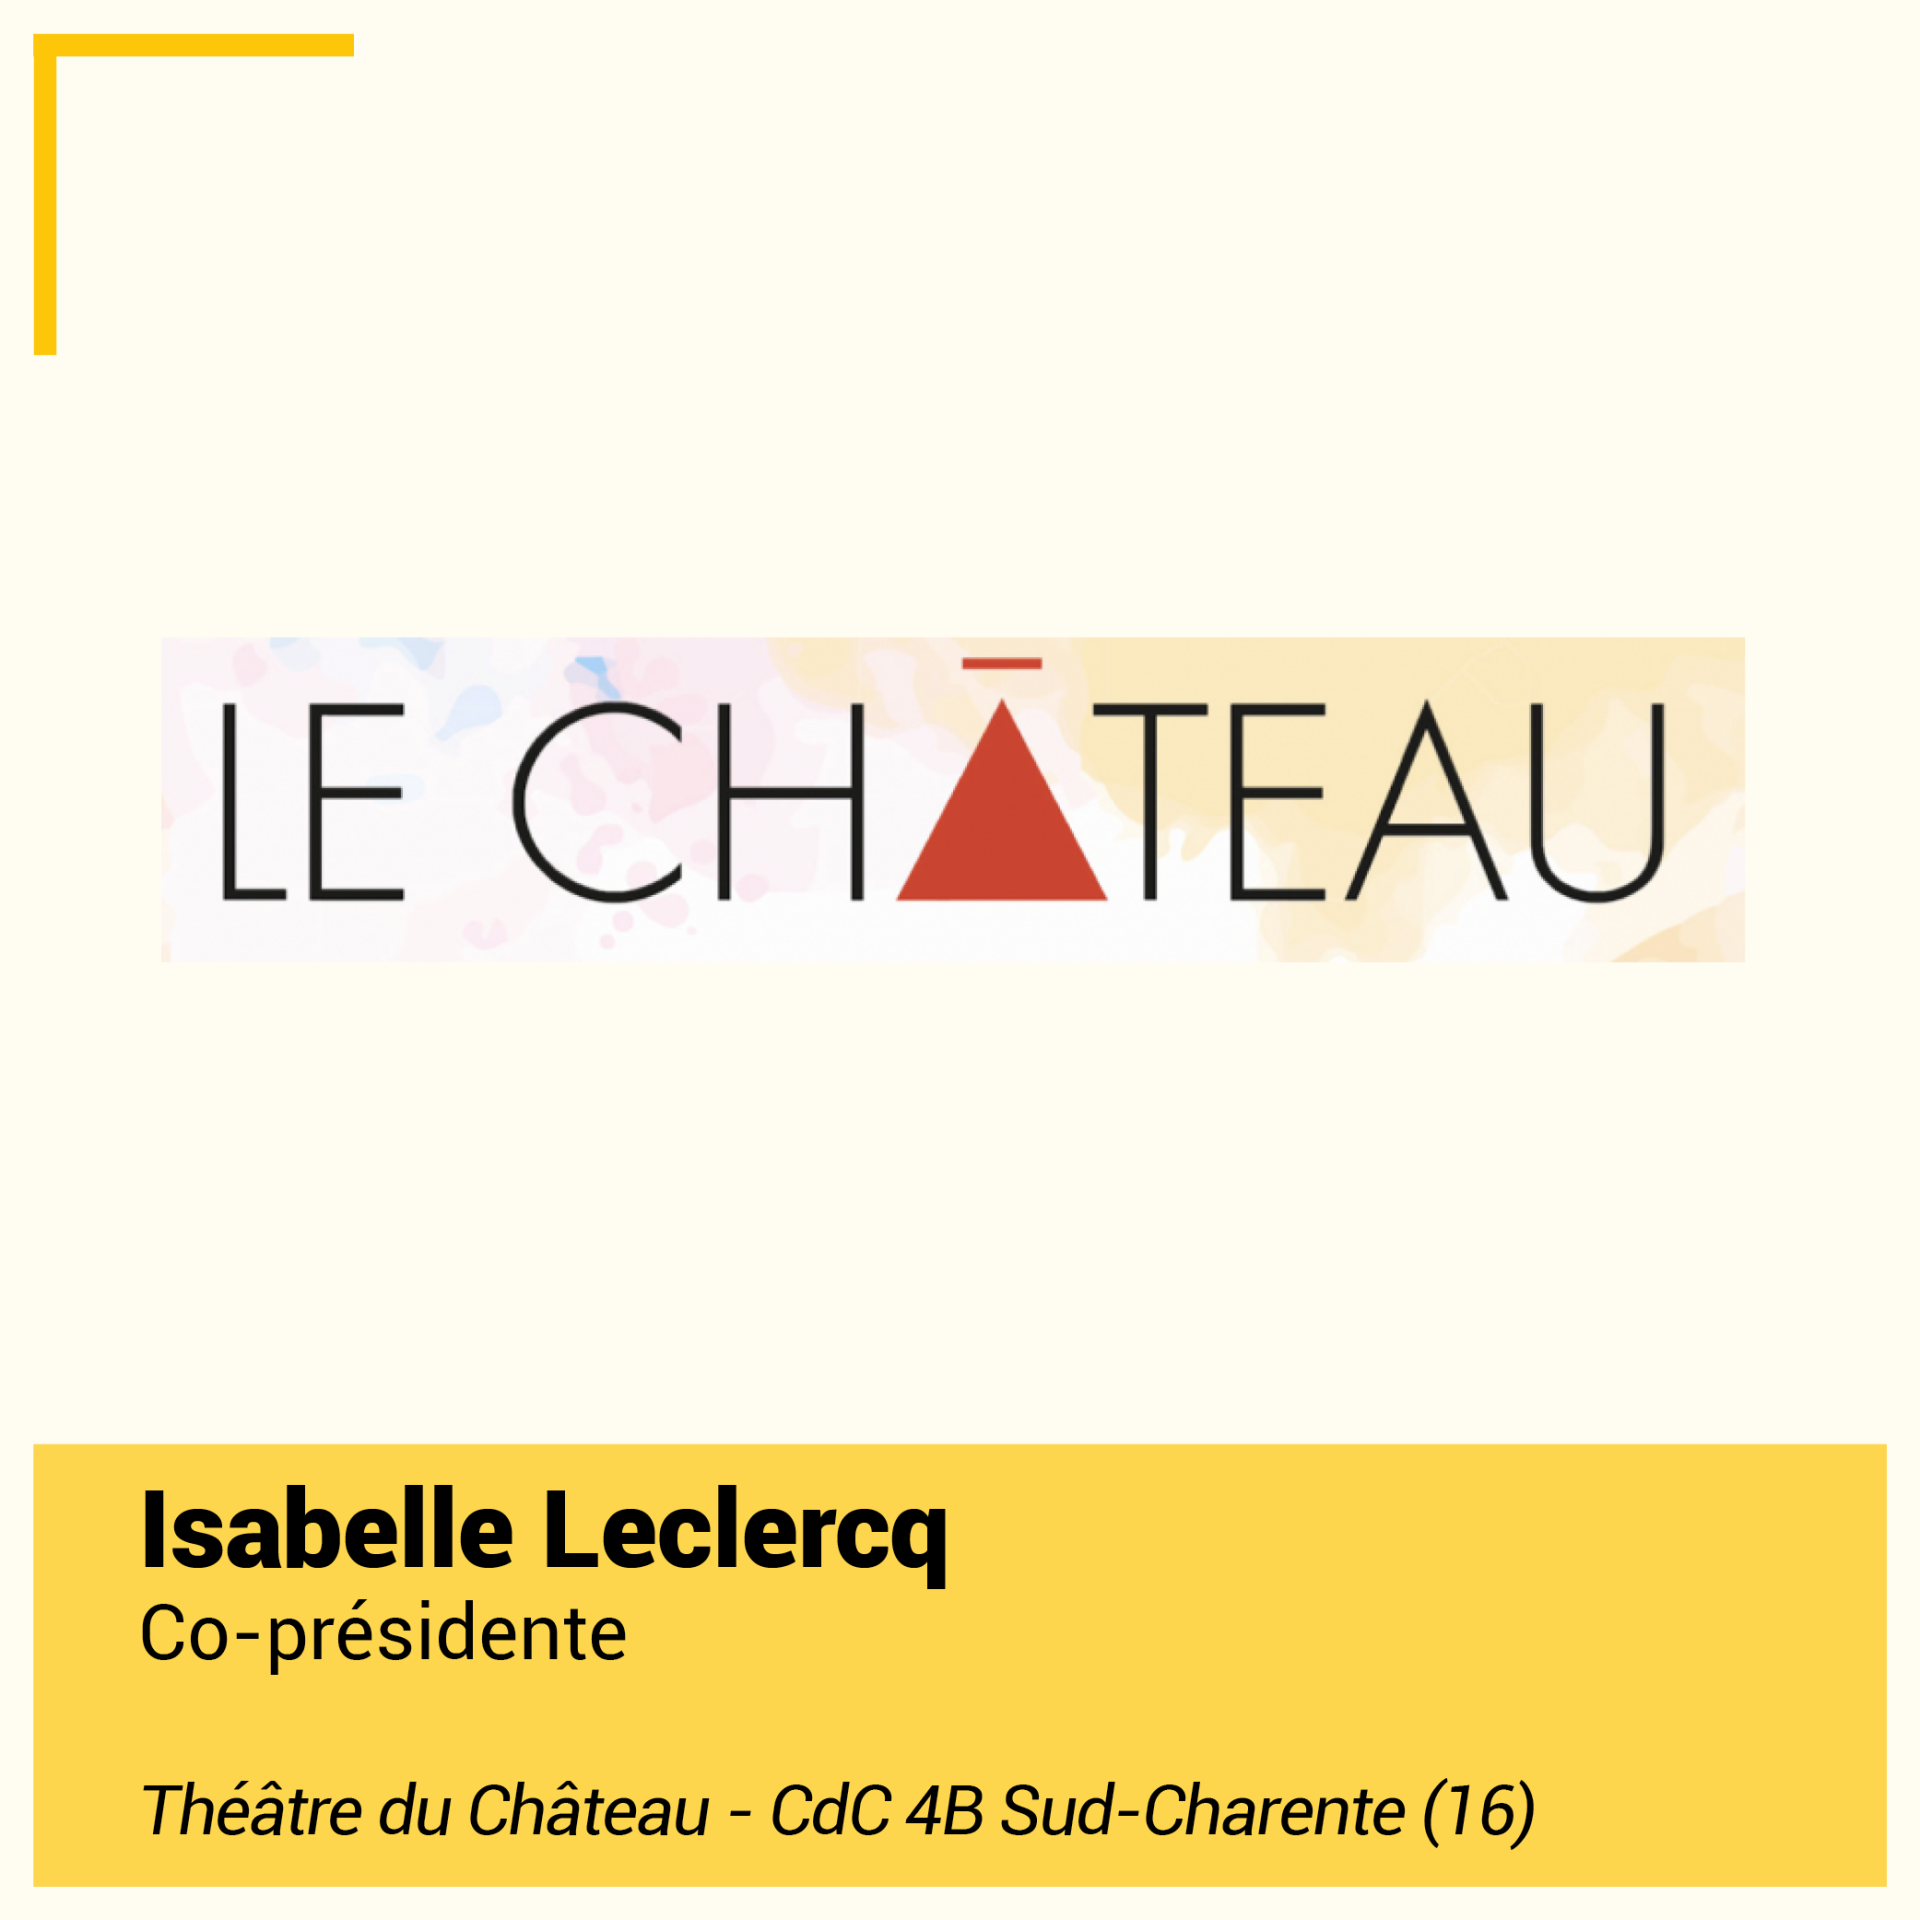 Isabelle leclercq